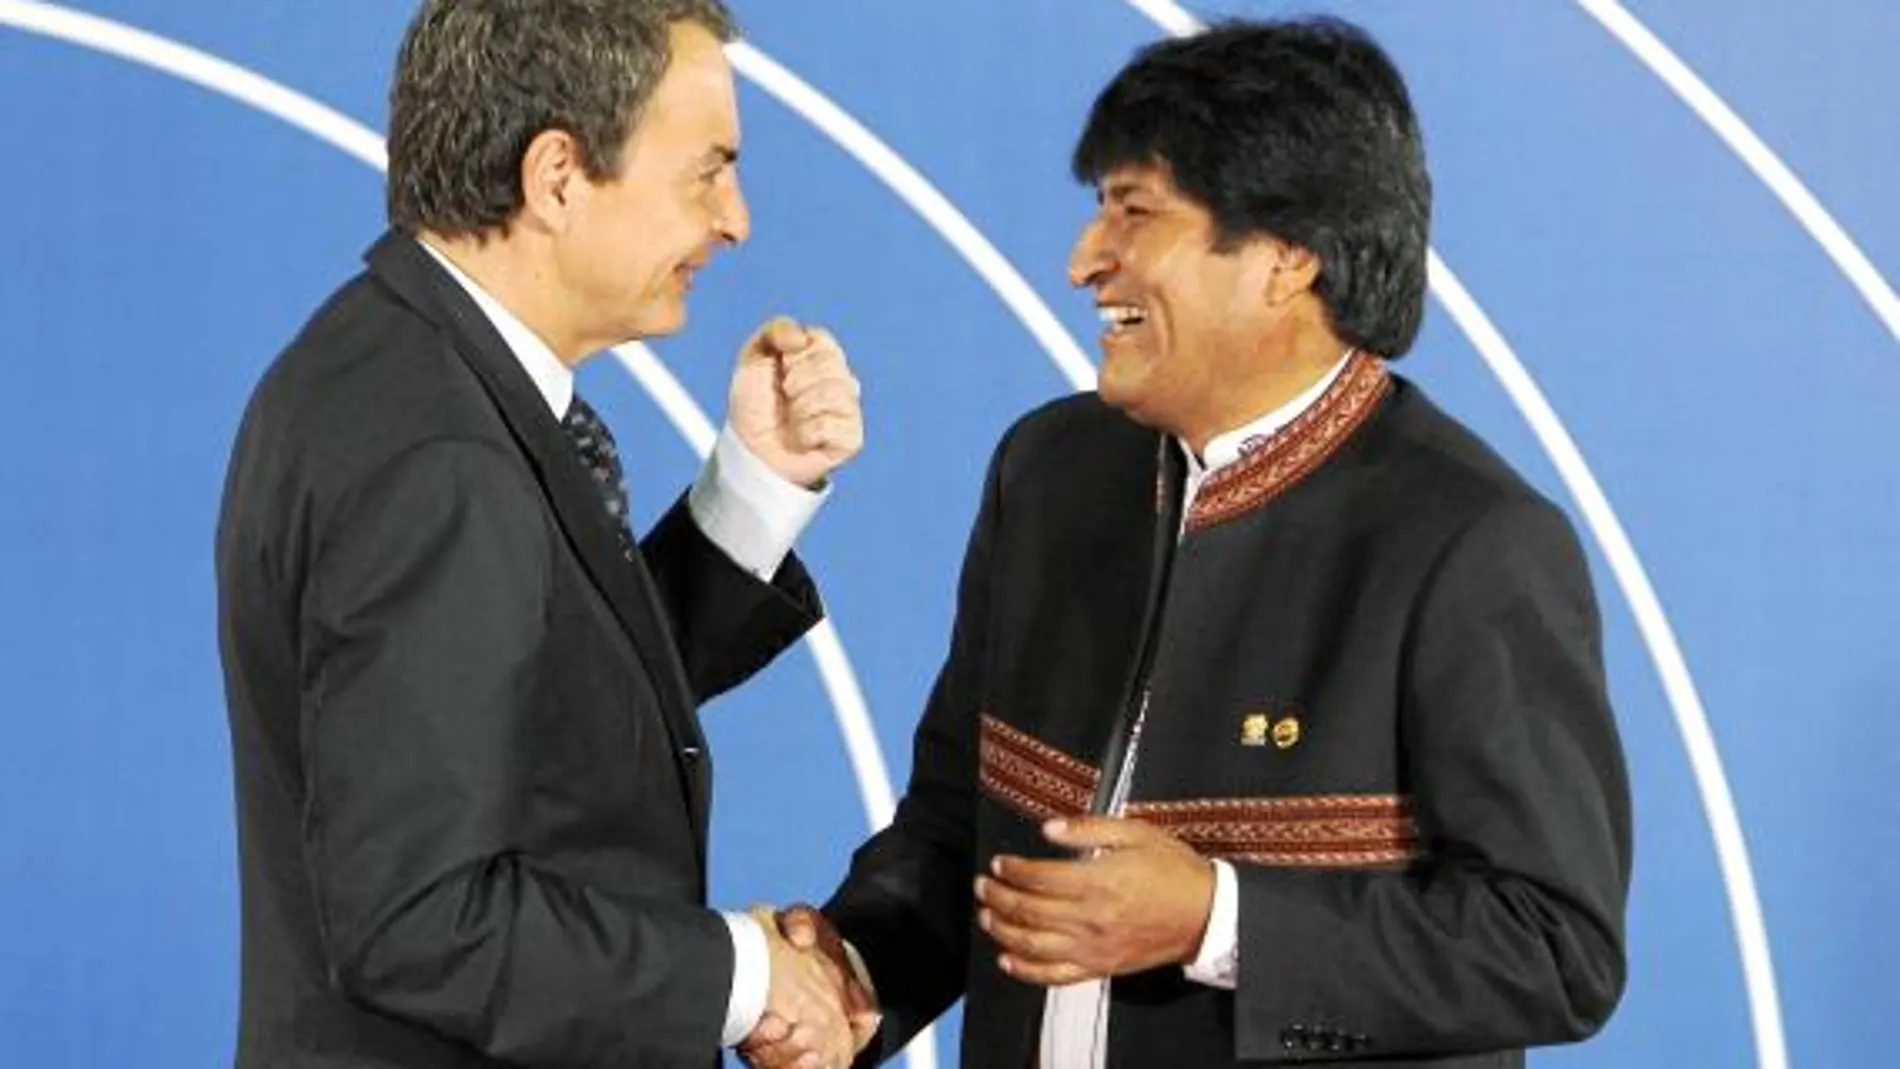 Zapatero saluda al presidente de Bolivia en la inauguración de la cumbre